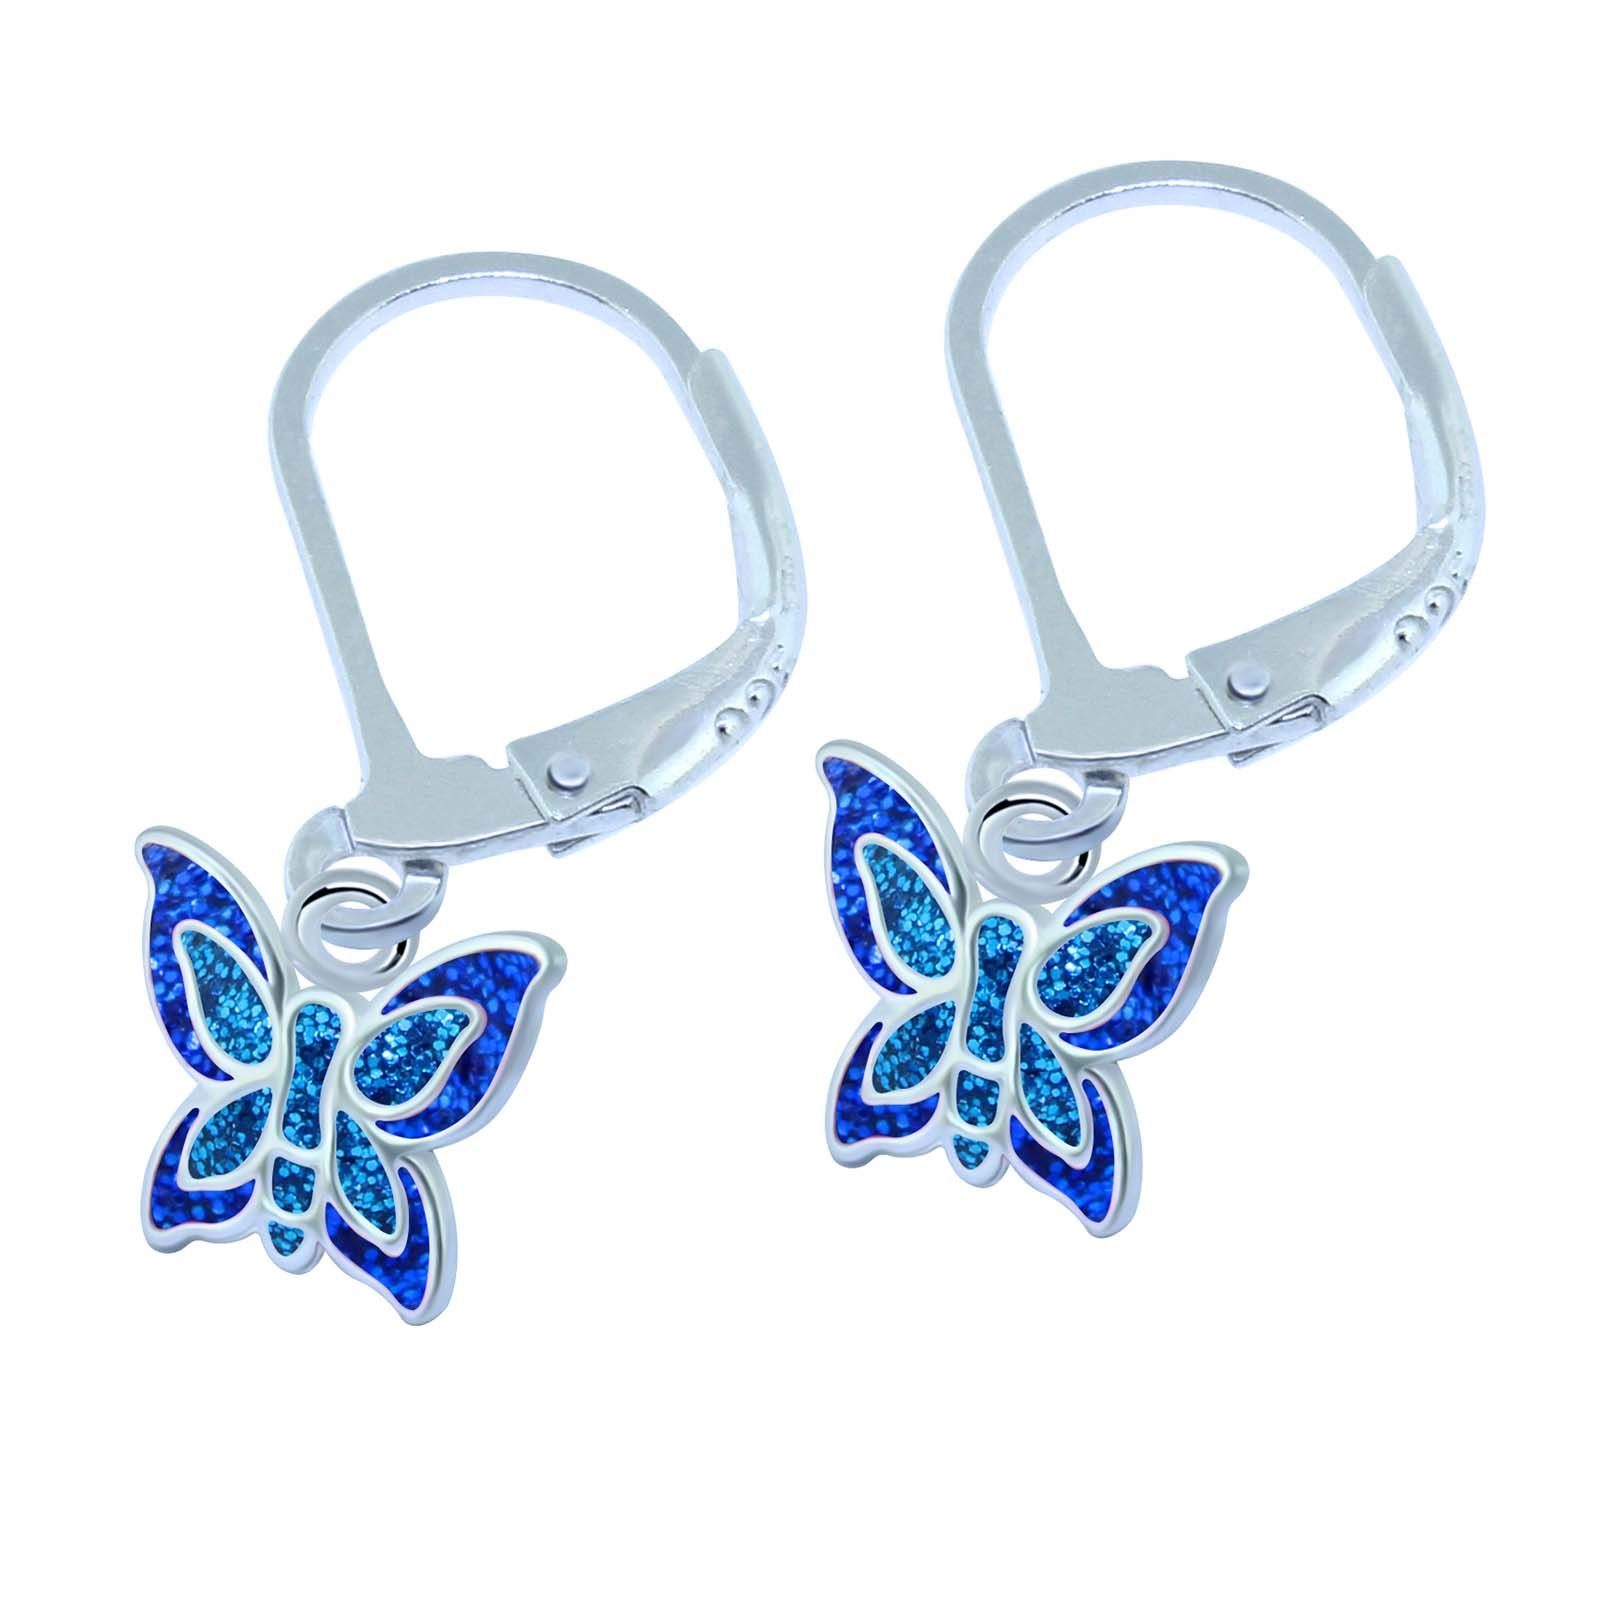 schmuck23 Paar Ohrhänger Kinder Ohrringe Schmetterling 925 Silber, Kinderschmuck, Mädchen, Geschenk, Creolen Blau-Blau